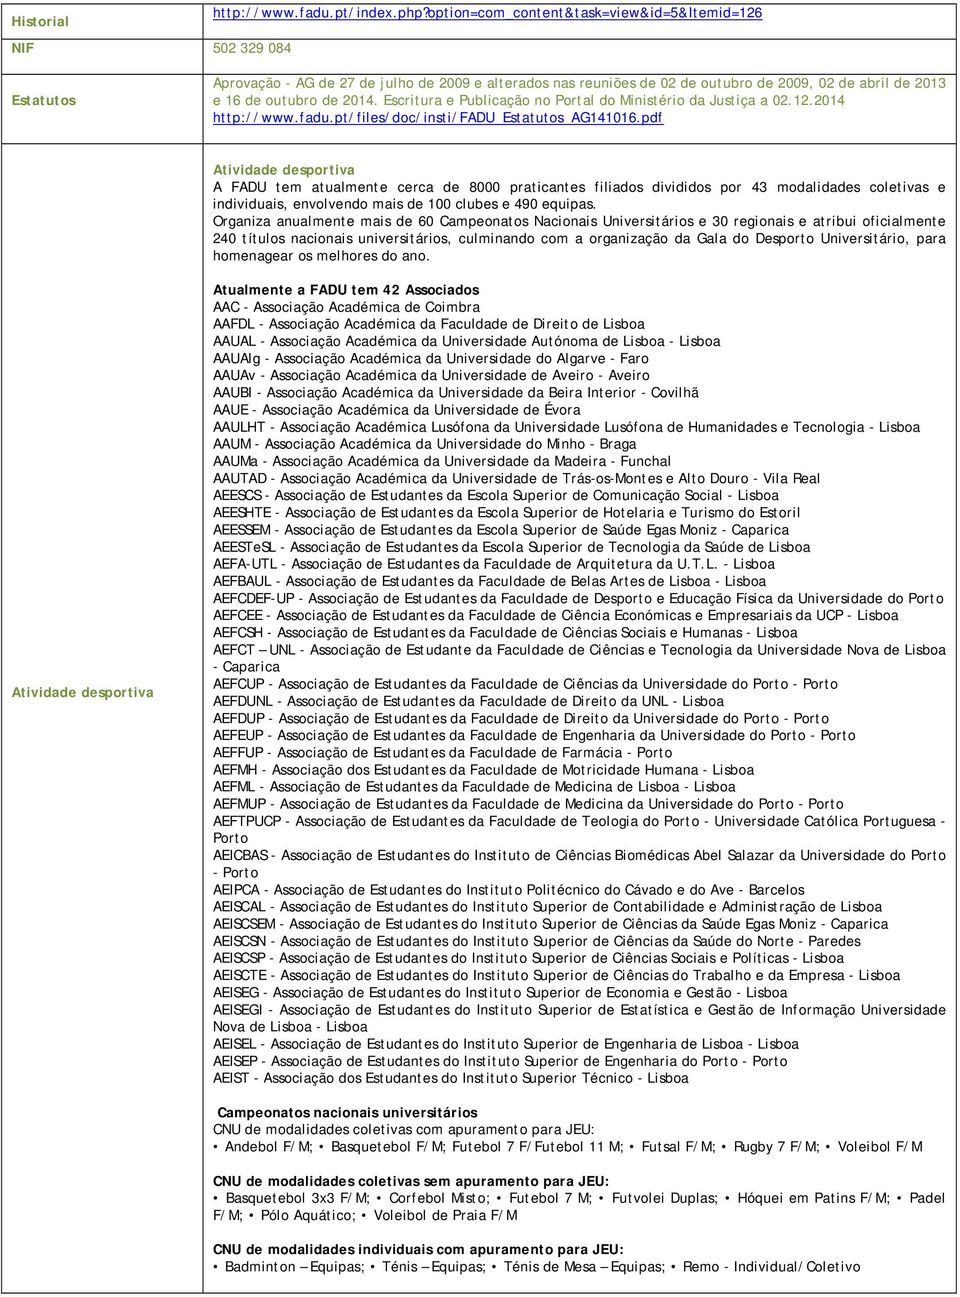 Escritura e Publicação no Portal do Ministério da Justiça a 02.12.2014 http://www.fadu.pt/files/doc/insti/fadu_estatutos_ag141016.